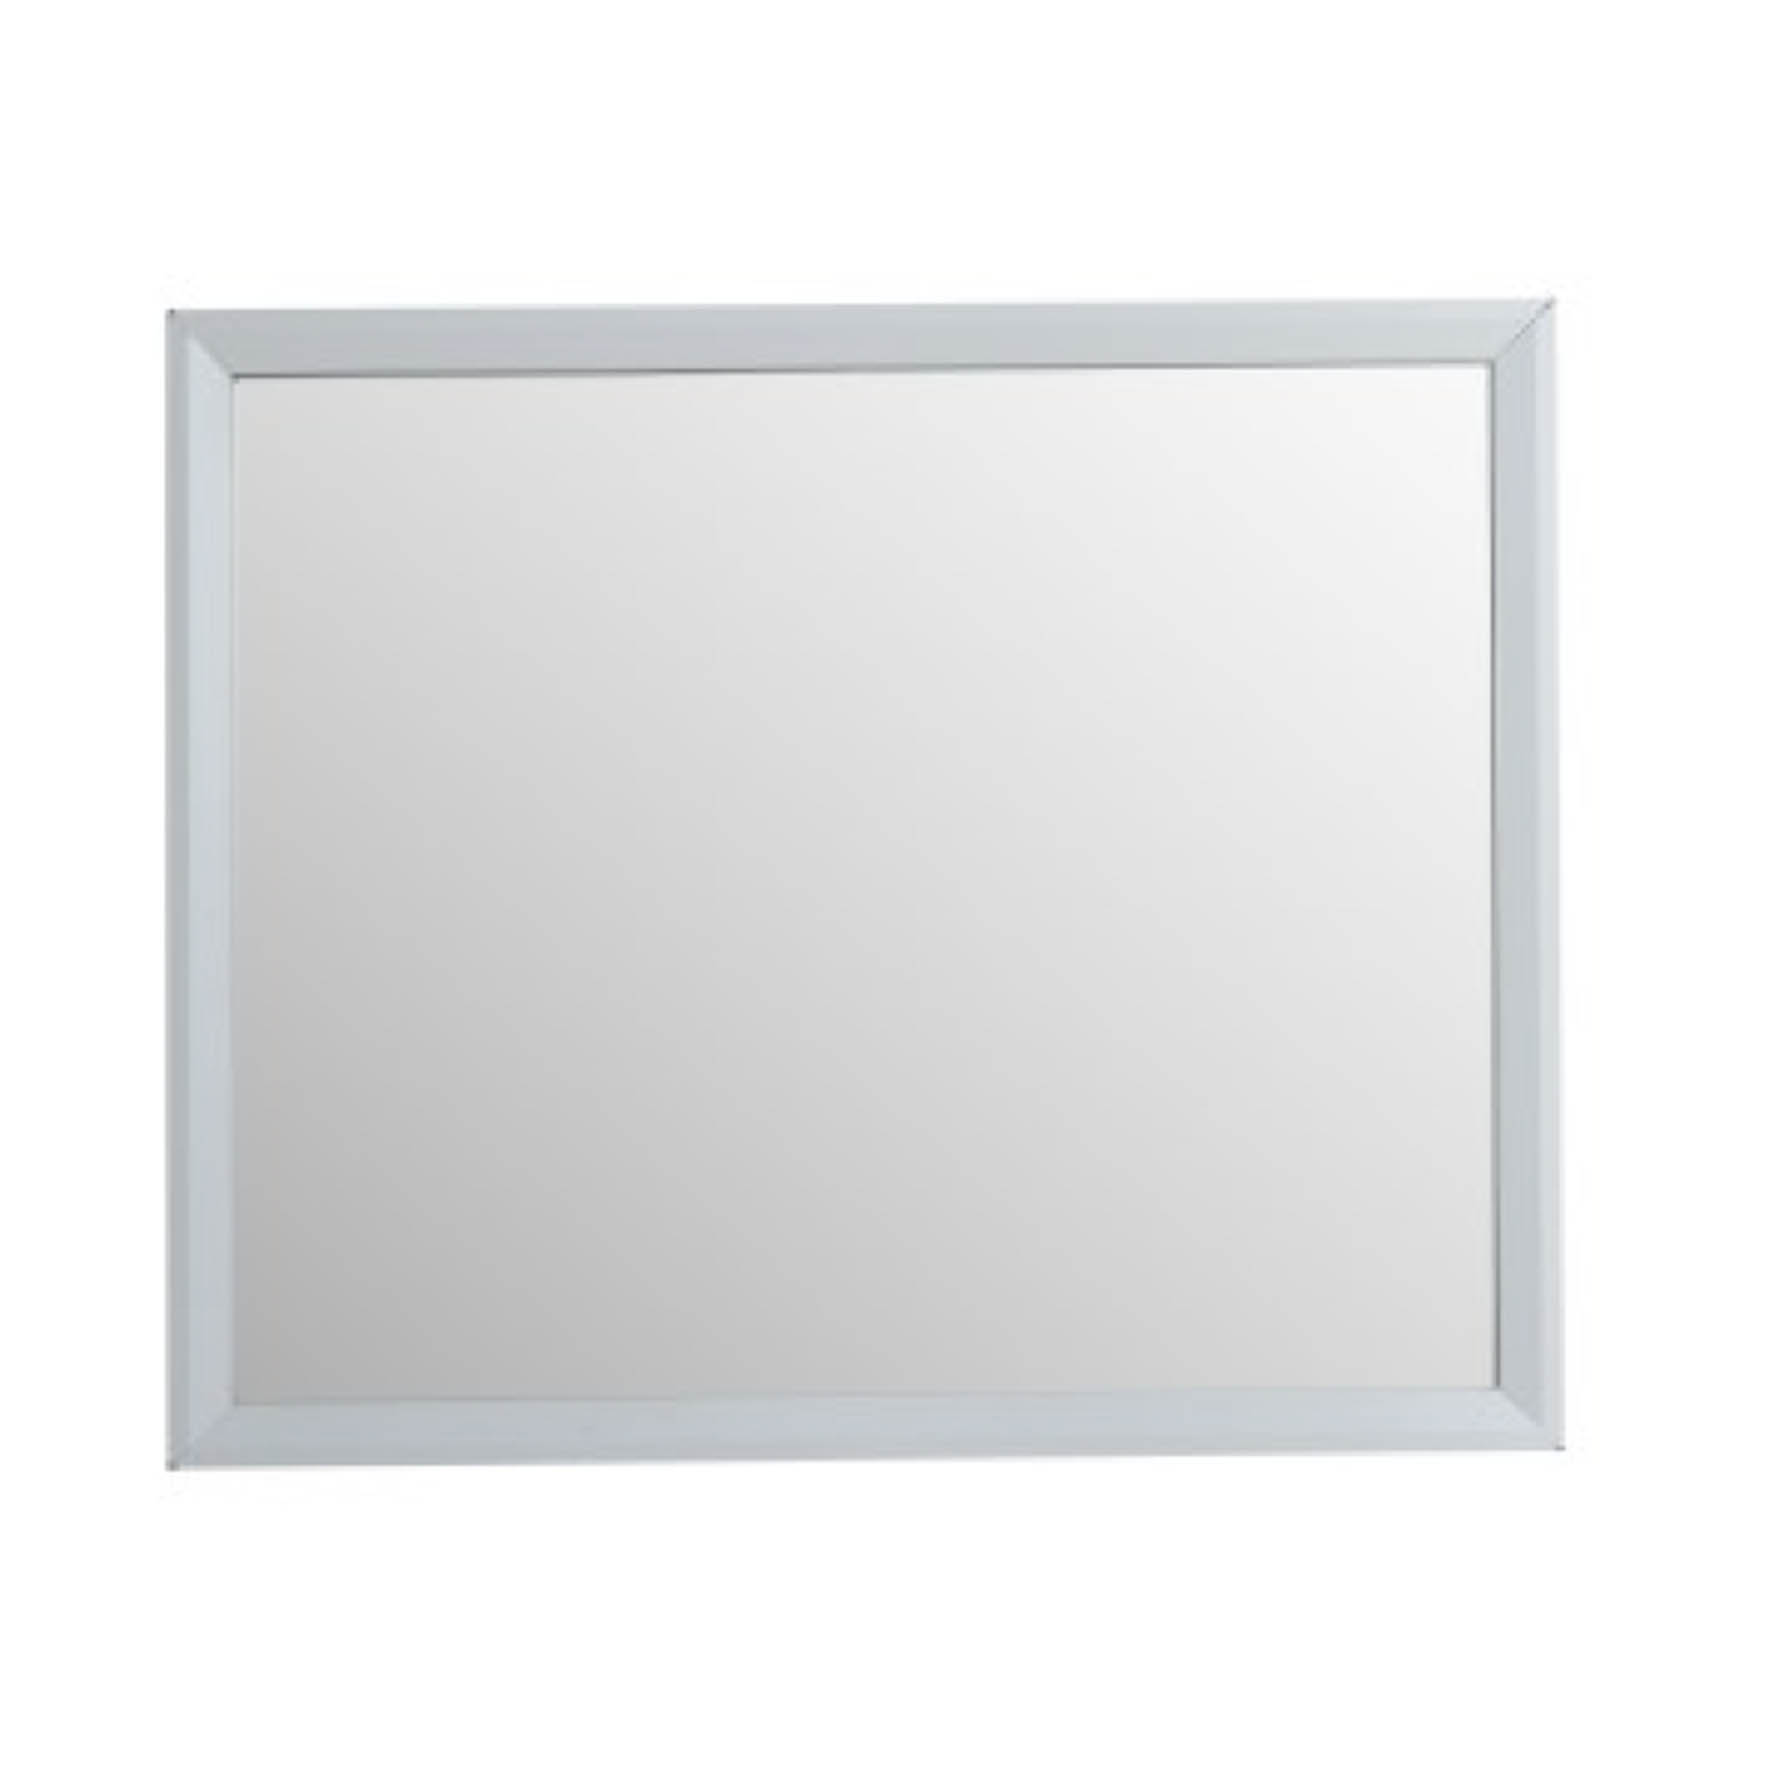 Rubine : Stainless Steel Framed Mirror (White) – RBM-56101-WH